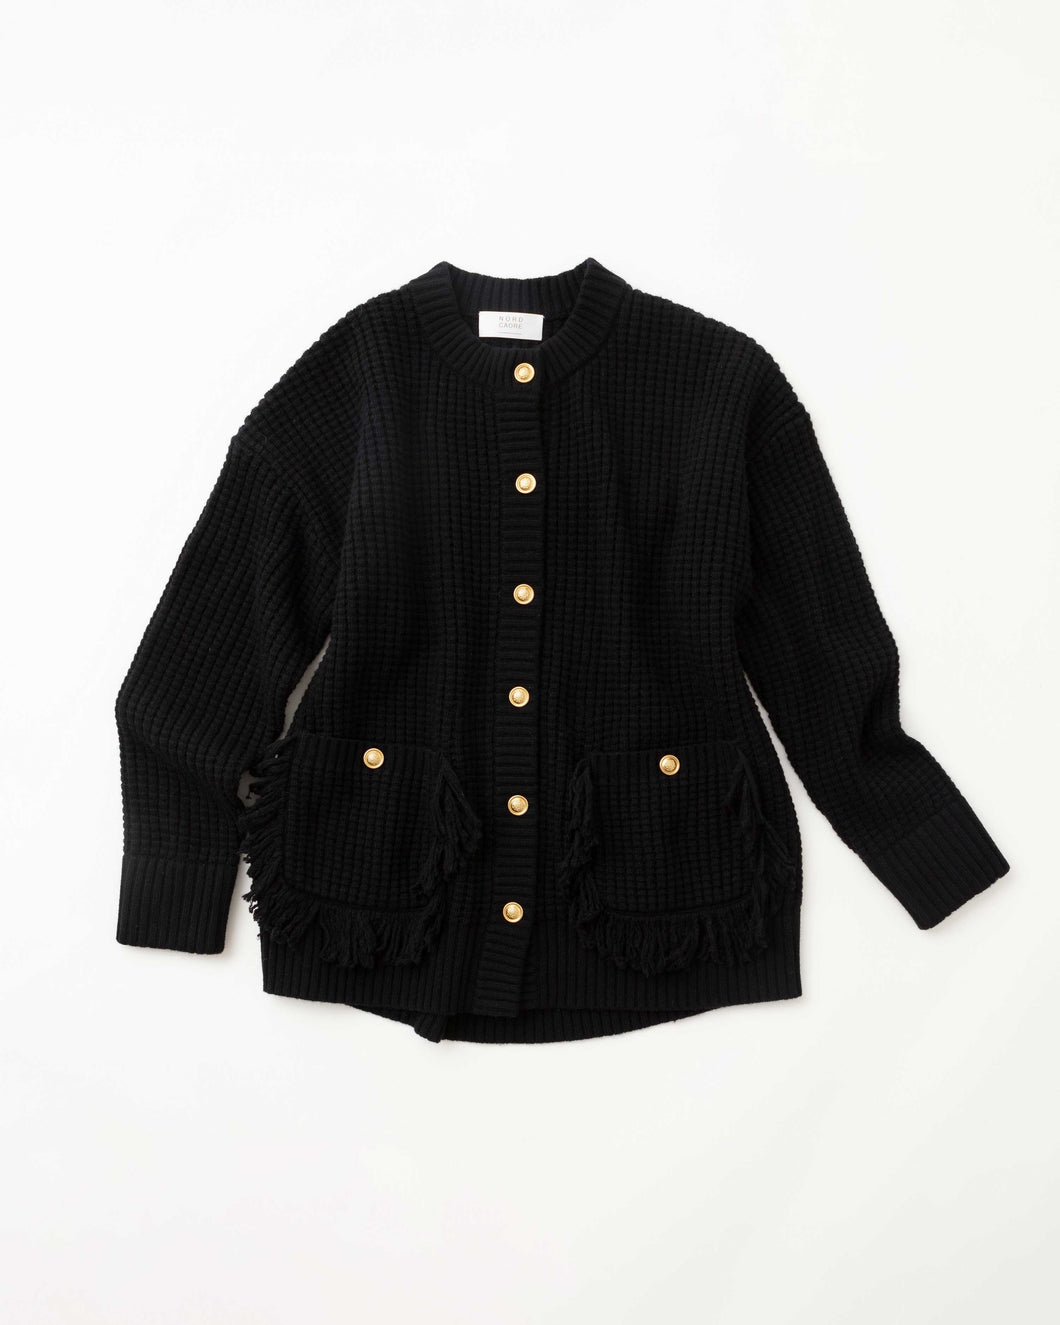 Fringe knit jacket